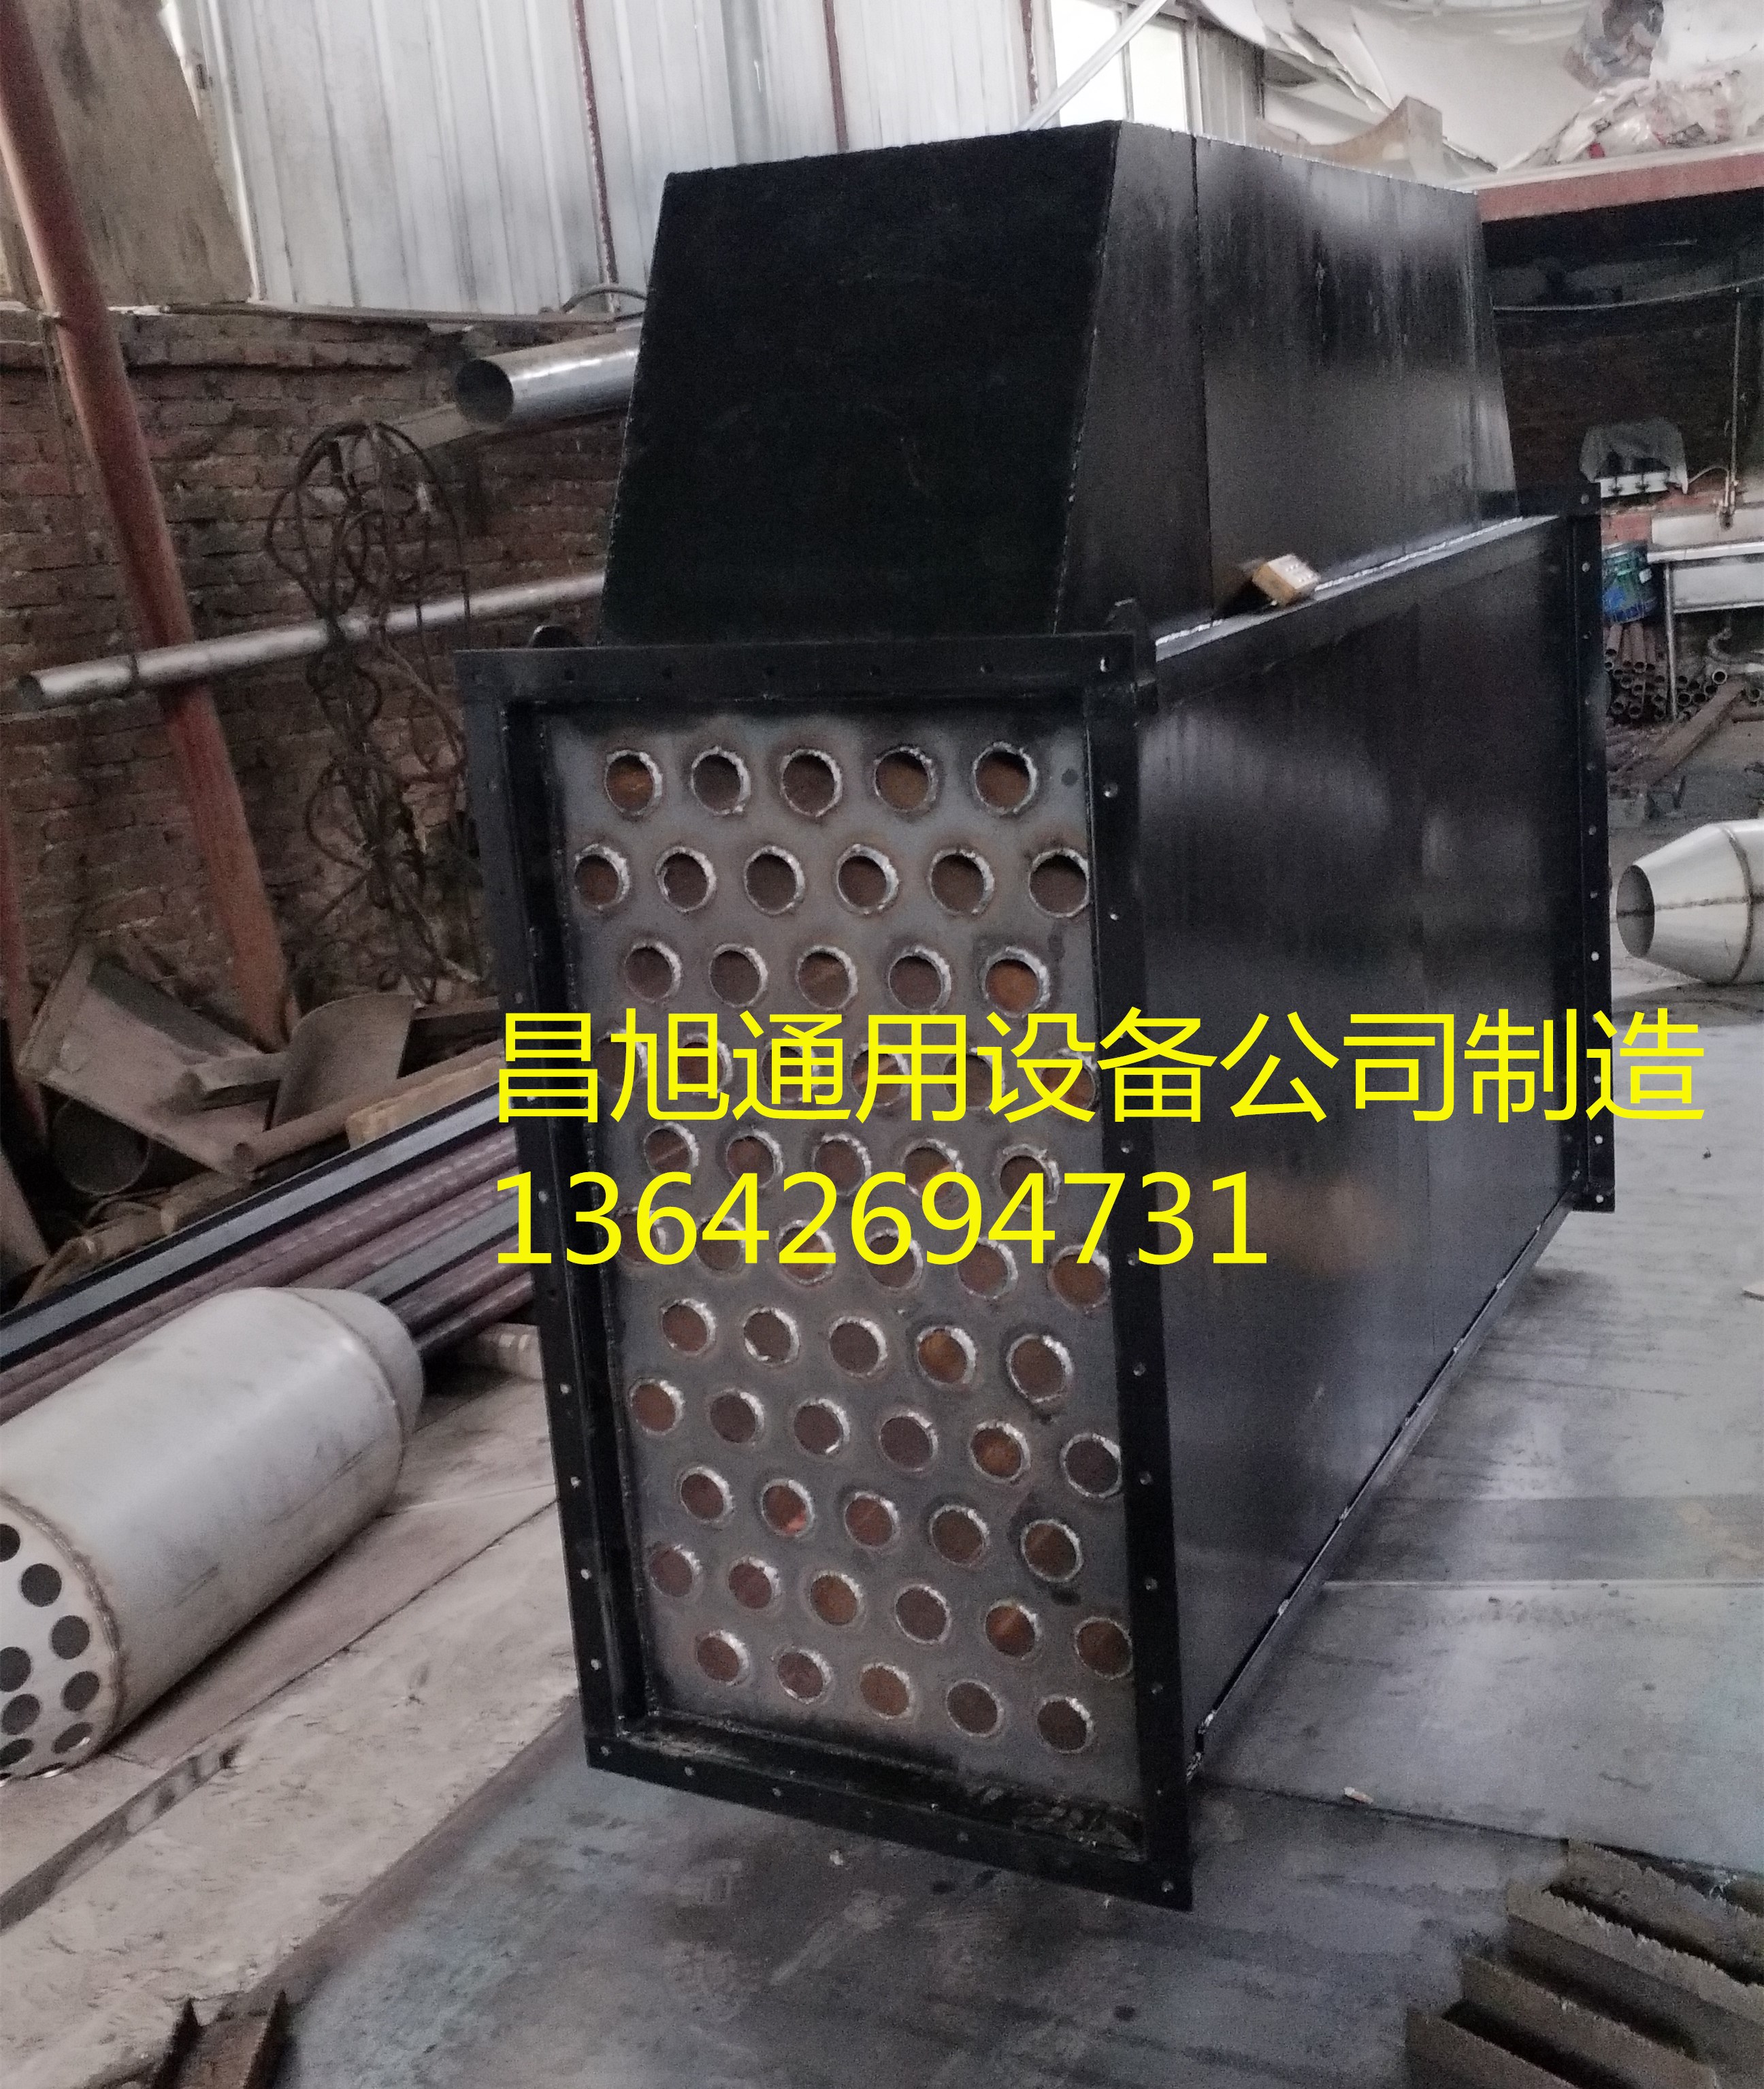 中山市蒸汽换热器厂家蒸汽换热器生产厂家 中山蒸汽换热器批发价格